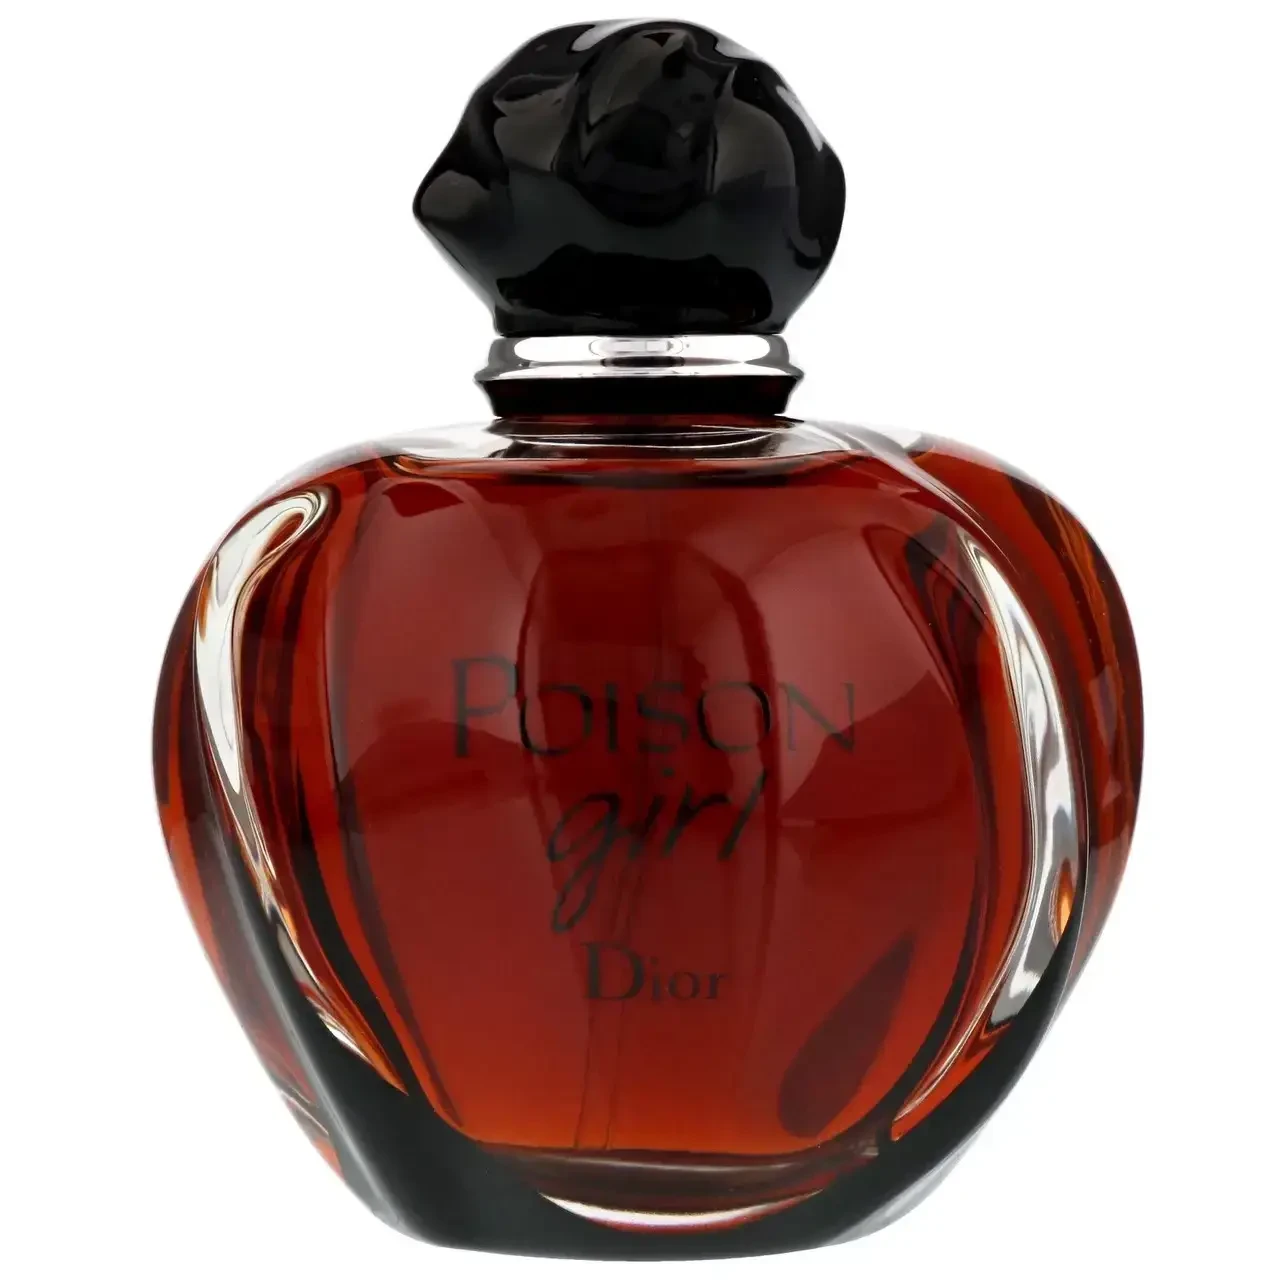 Женские духи Christian Dior Poison for women 100 ml купить недорого цена  1 048 руб в интернет магазине Эгоизм